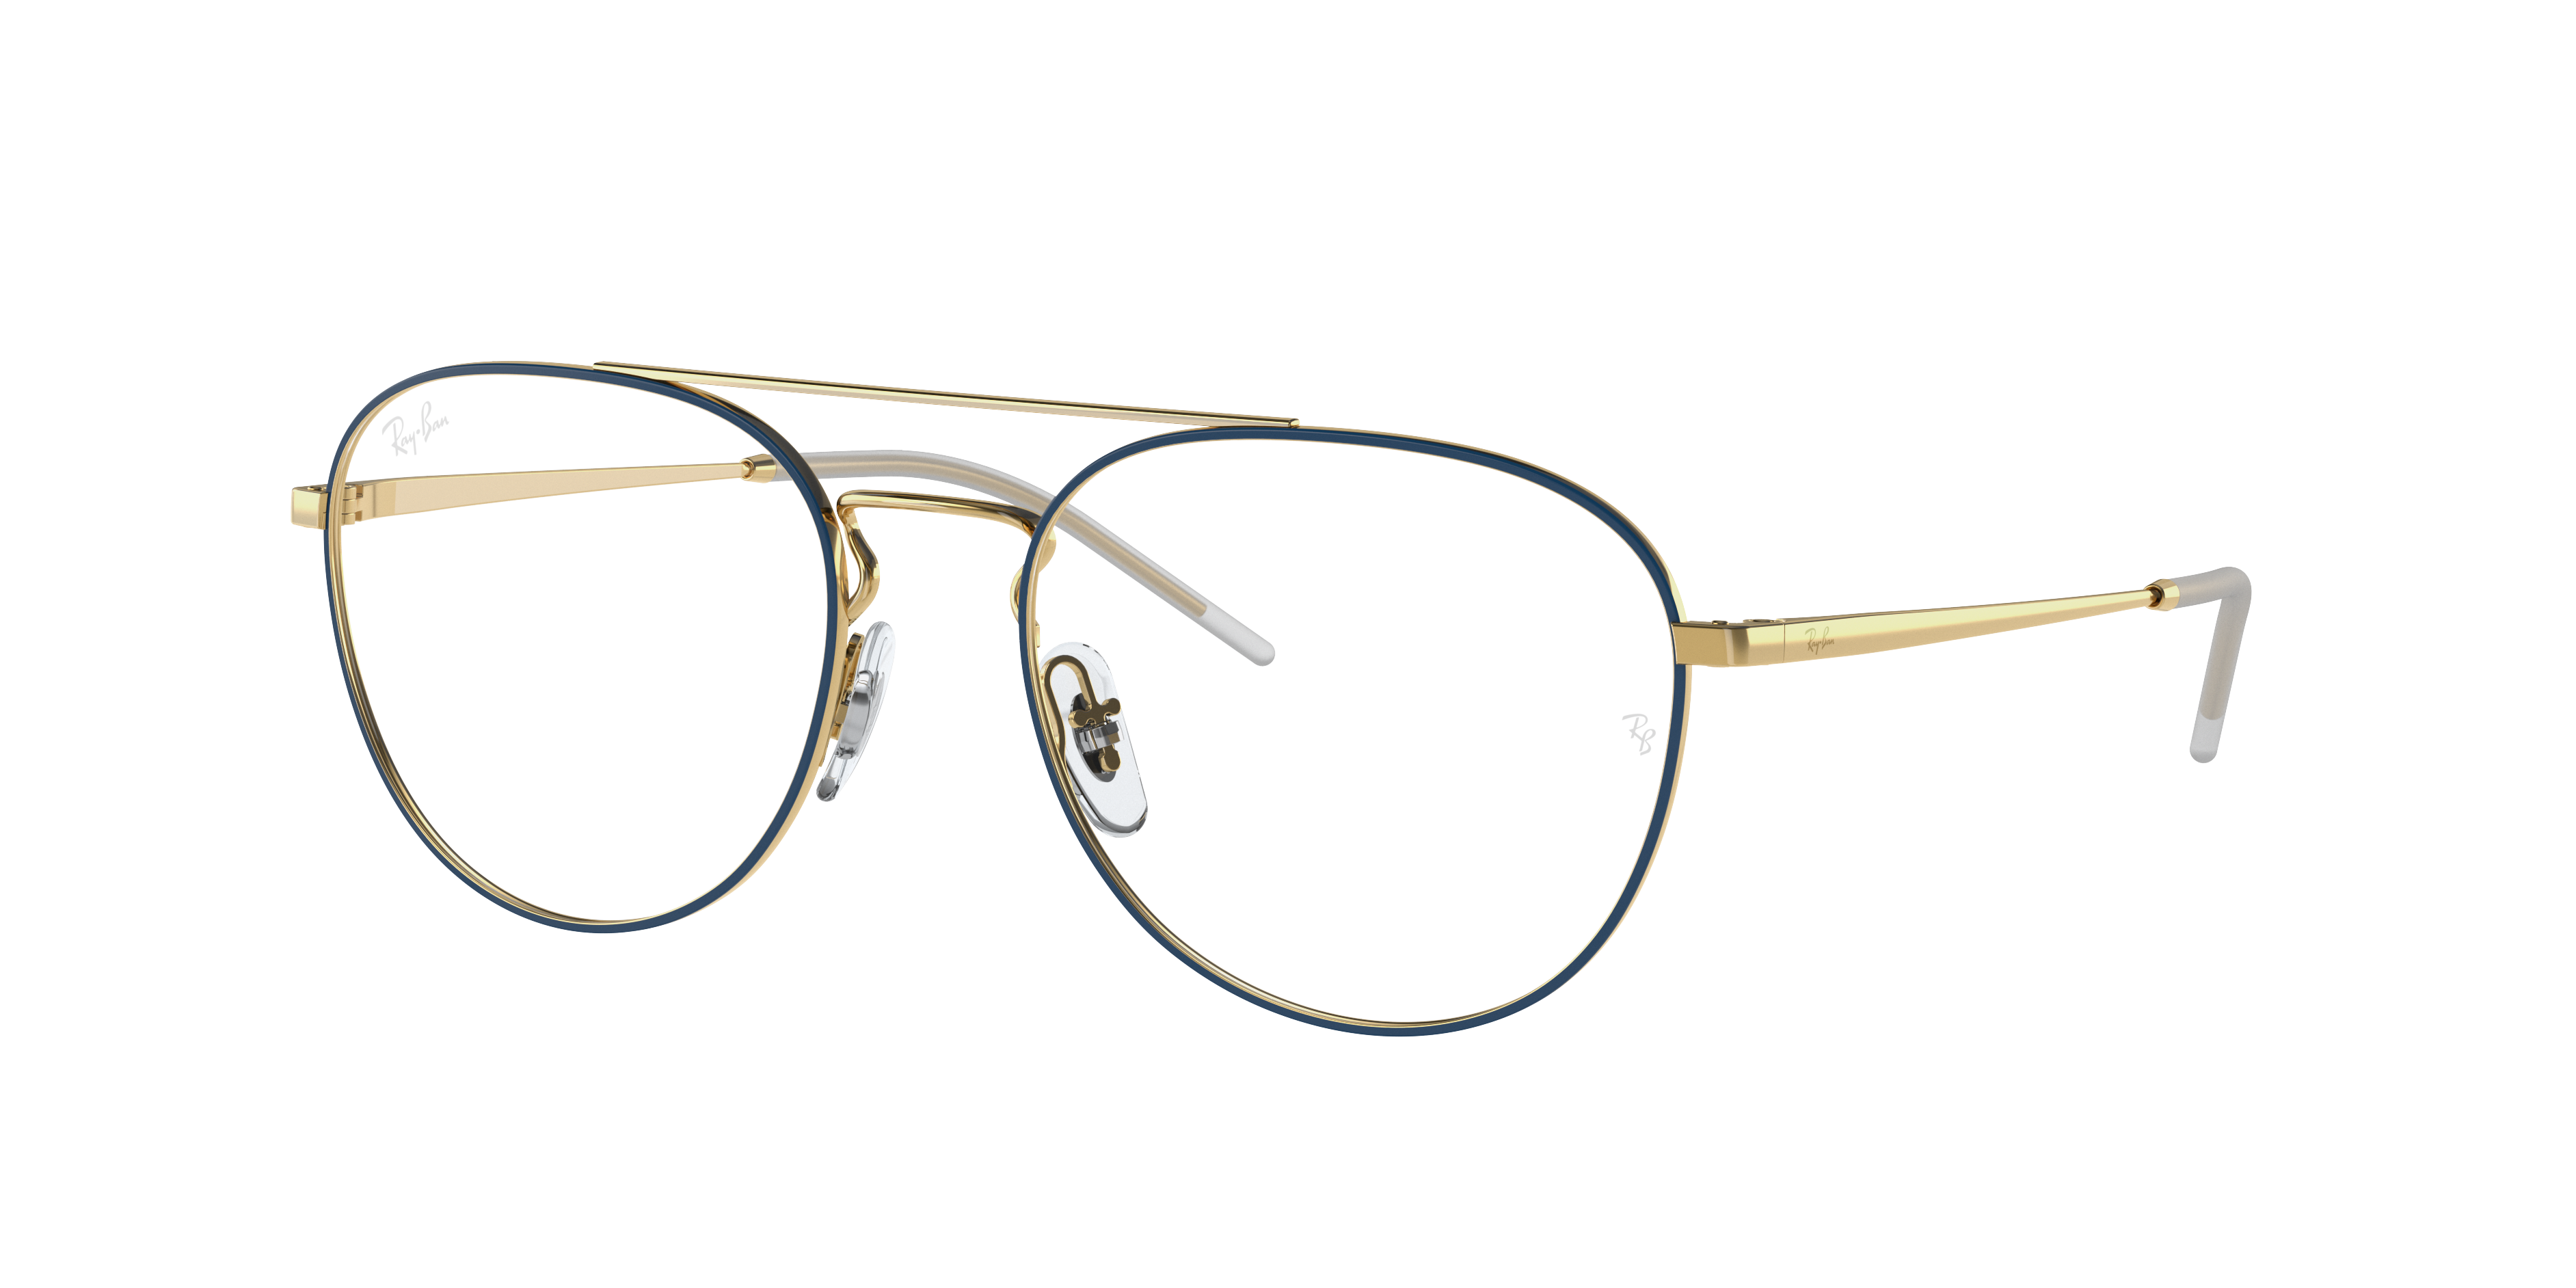 Ray-Ban RB6414 Silver Eyeglasses | Glasses.com® | Free Shipping